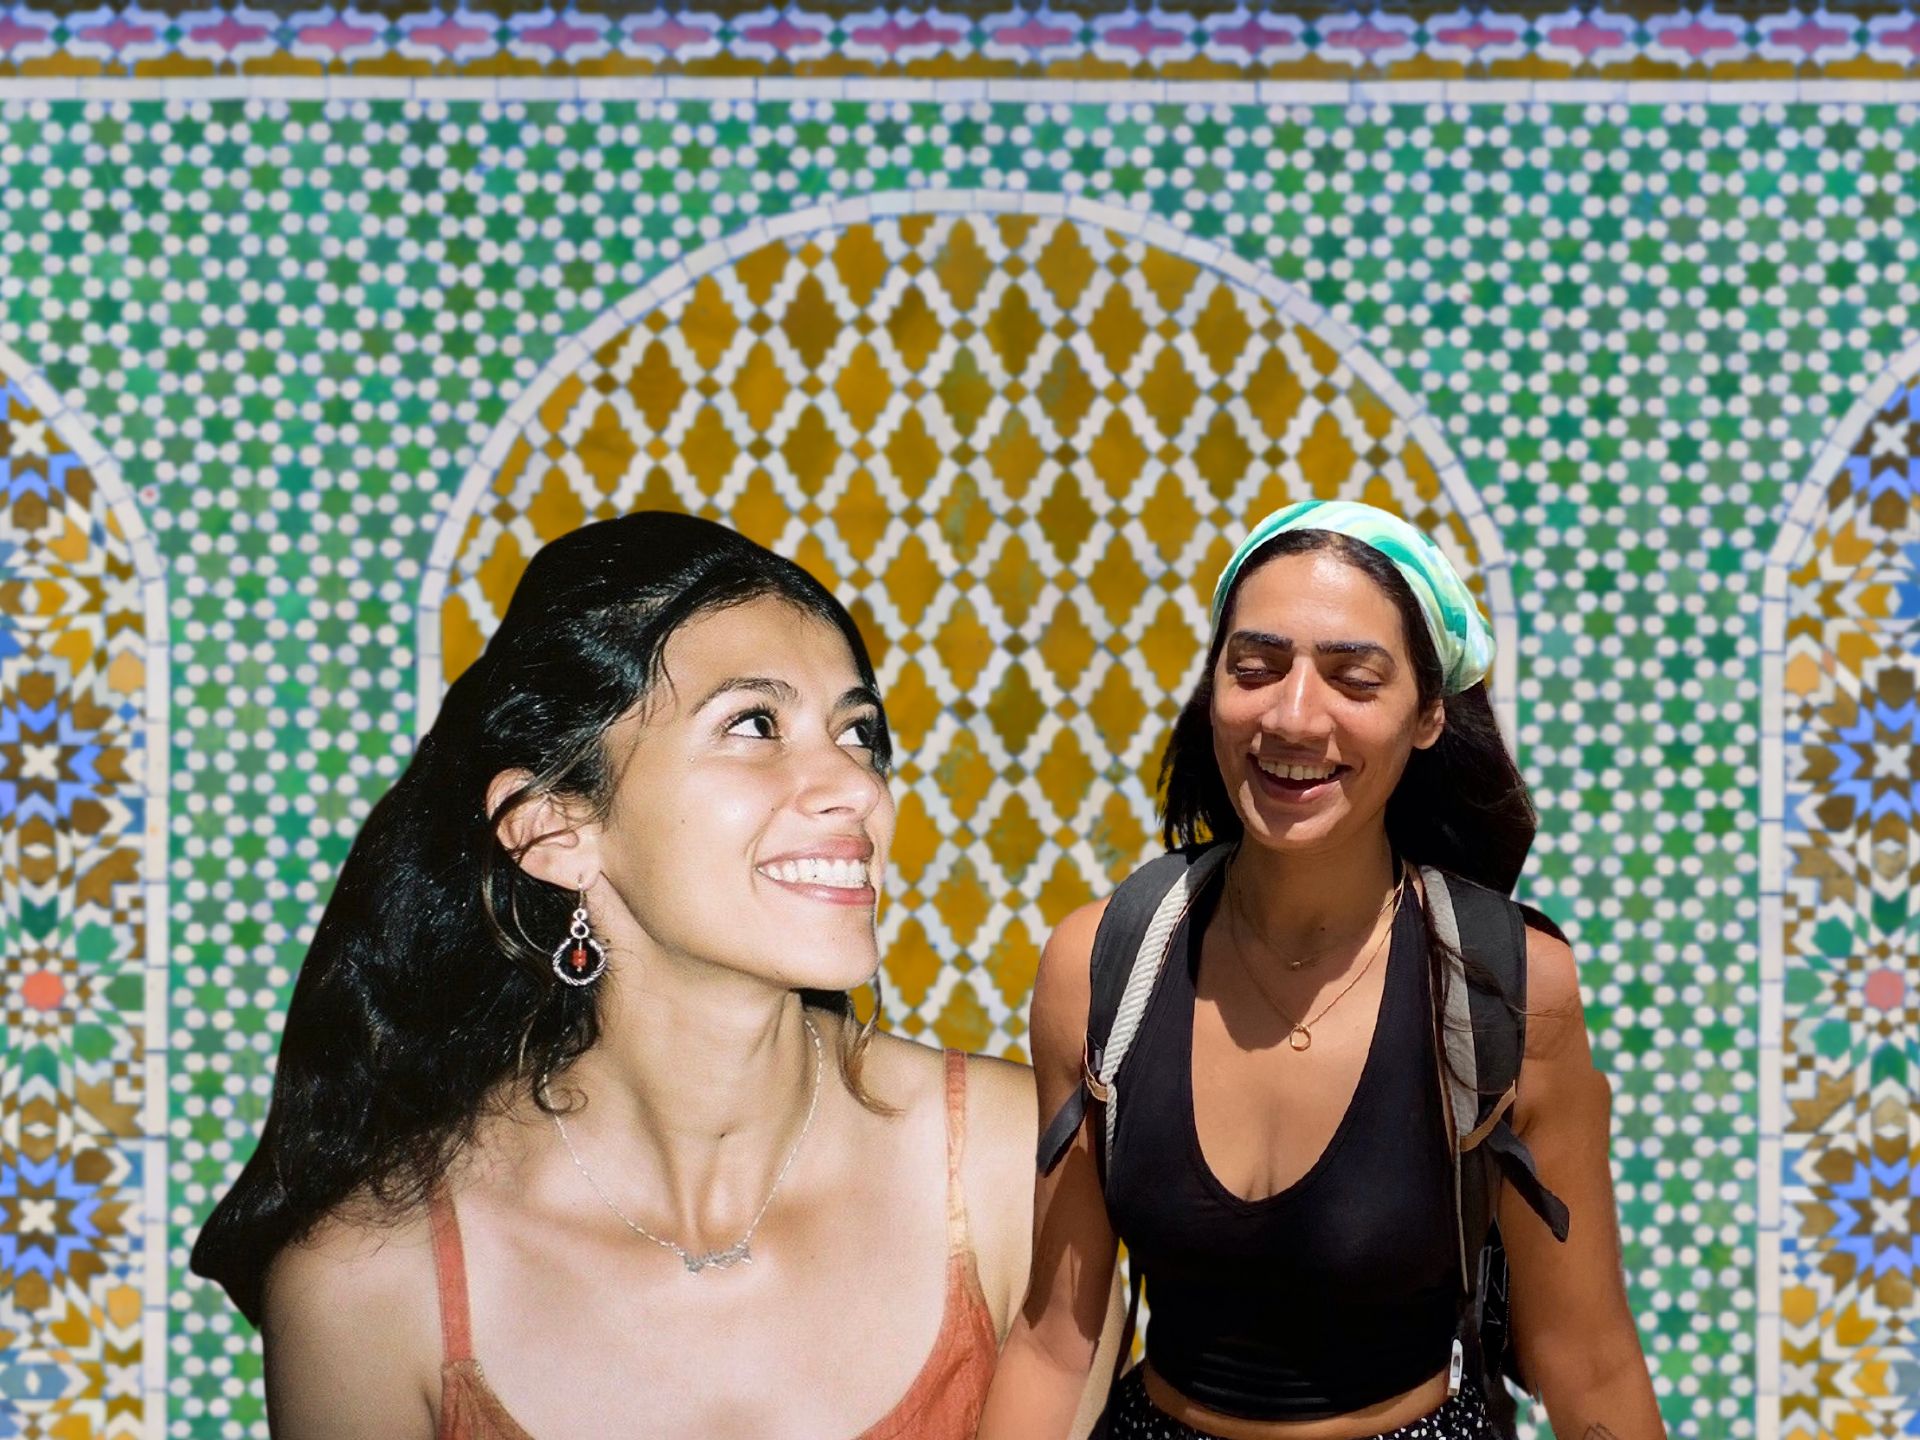 حفل الختام الفذ. ليلى مون وعايدة سالندر | المغرب العربي * على حد سواء